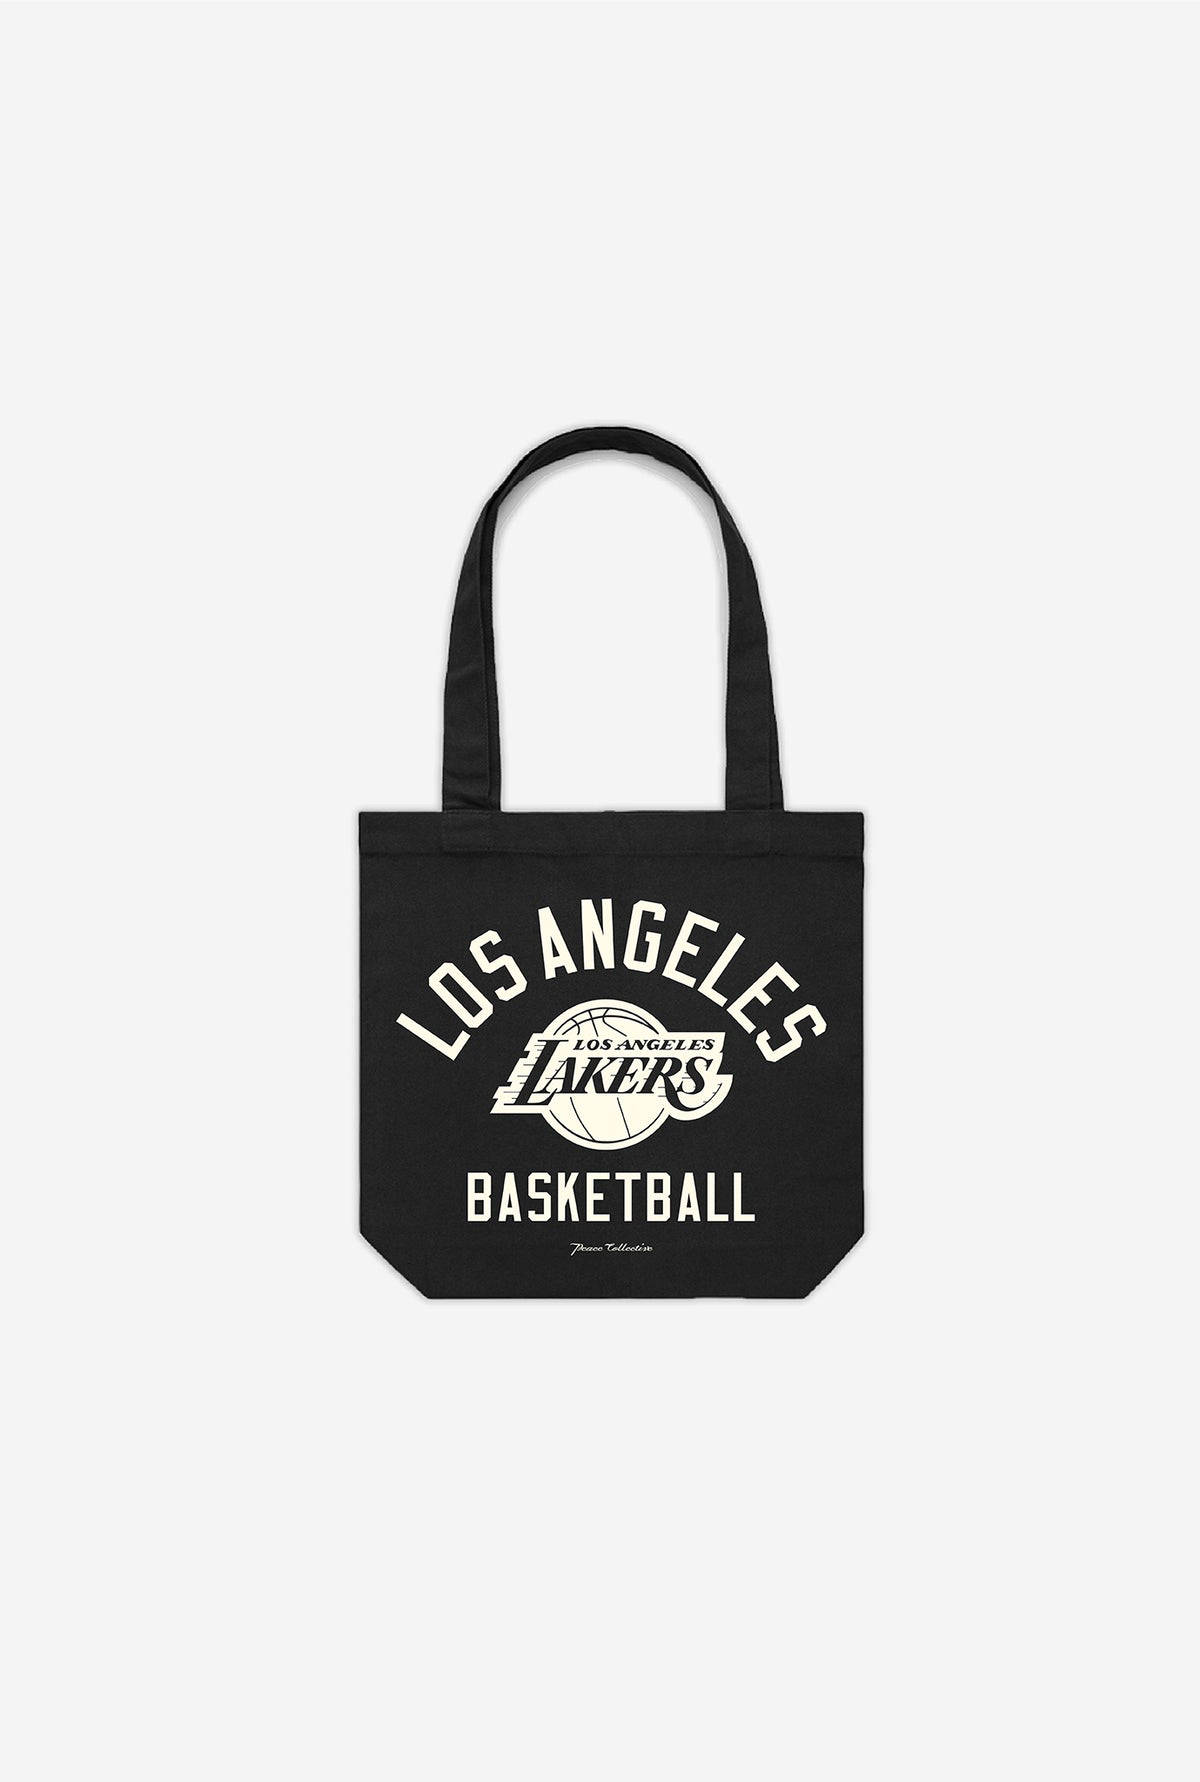 Los Angeles Lakers Tote Bag - Black